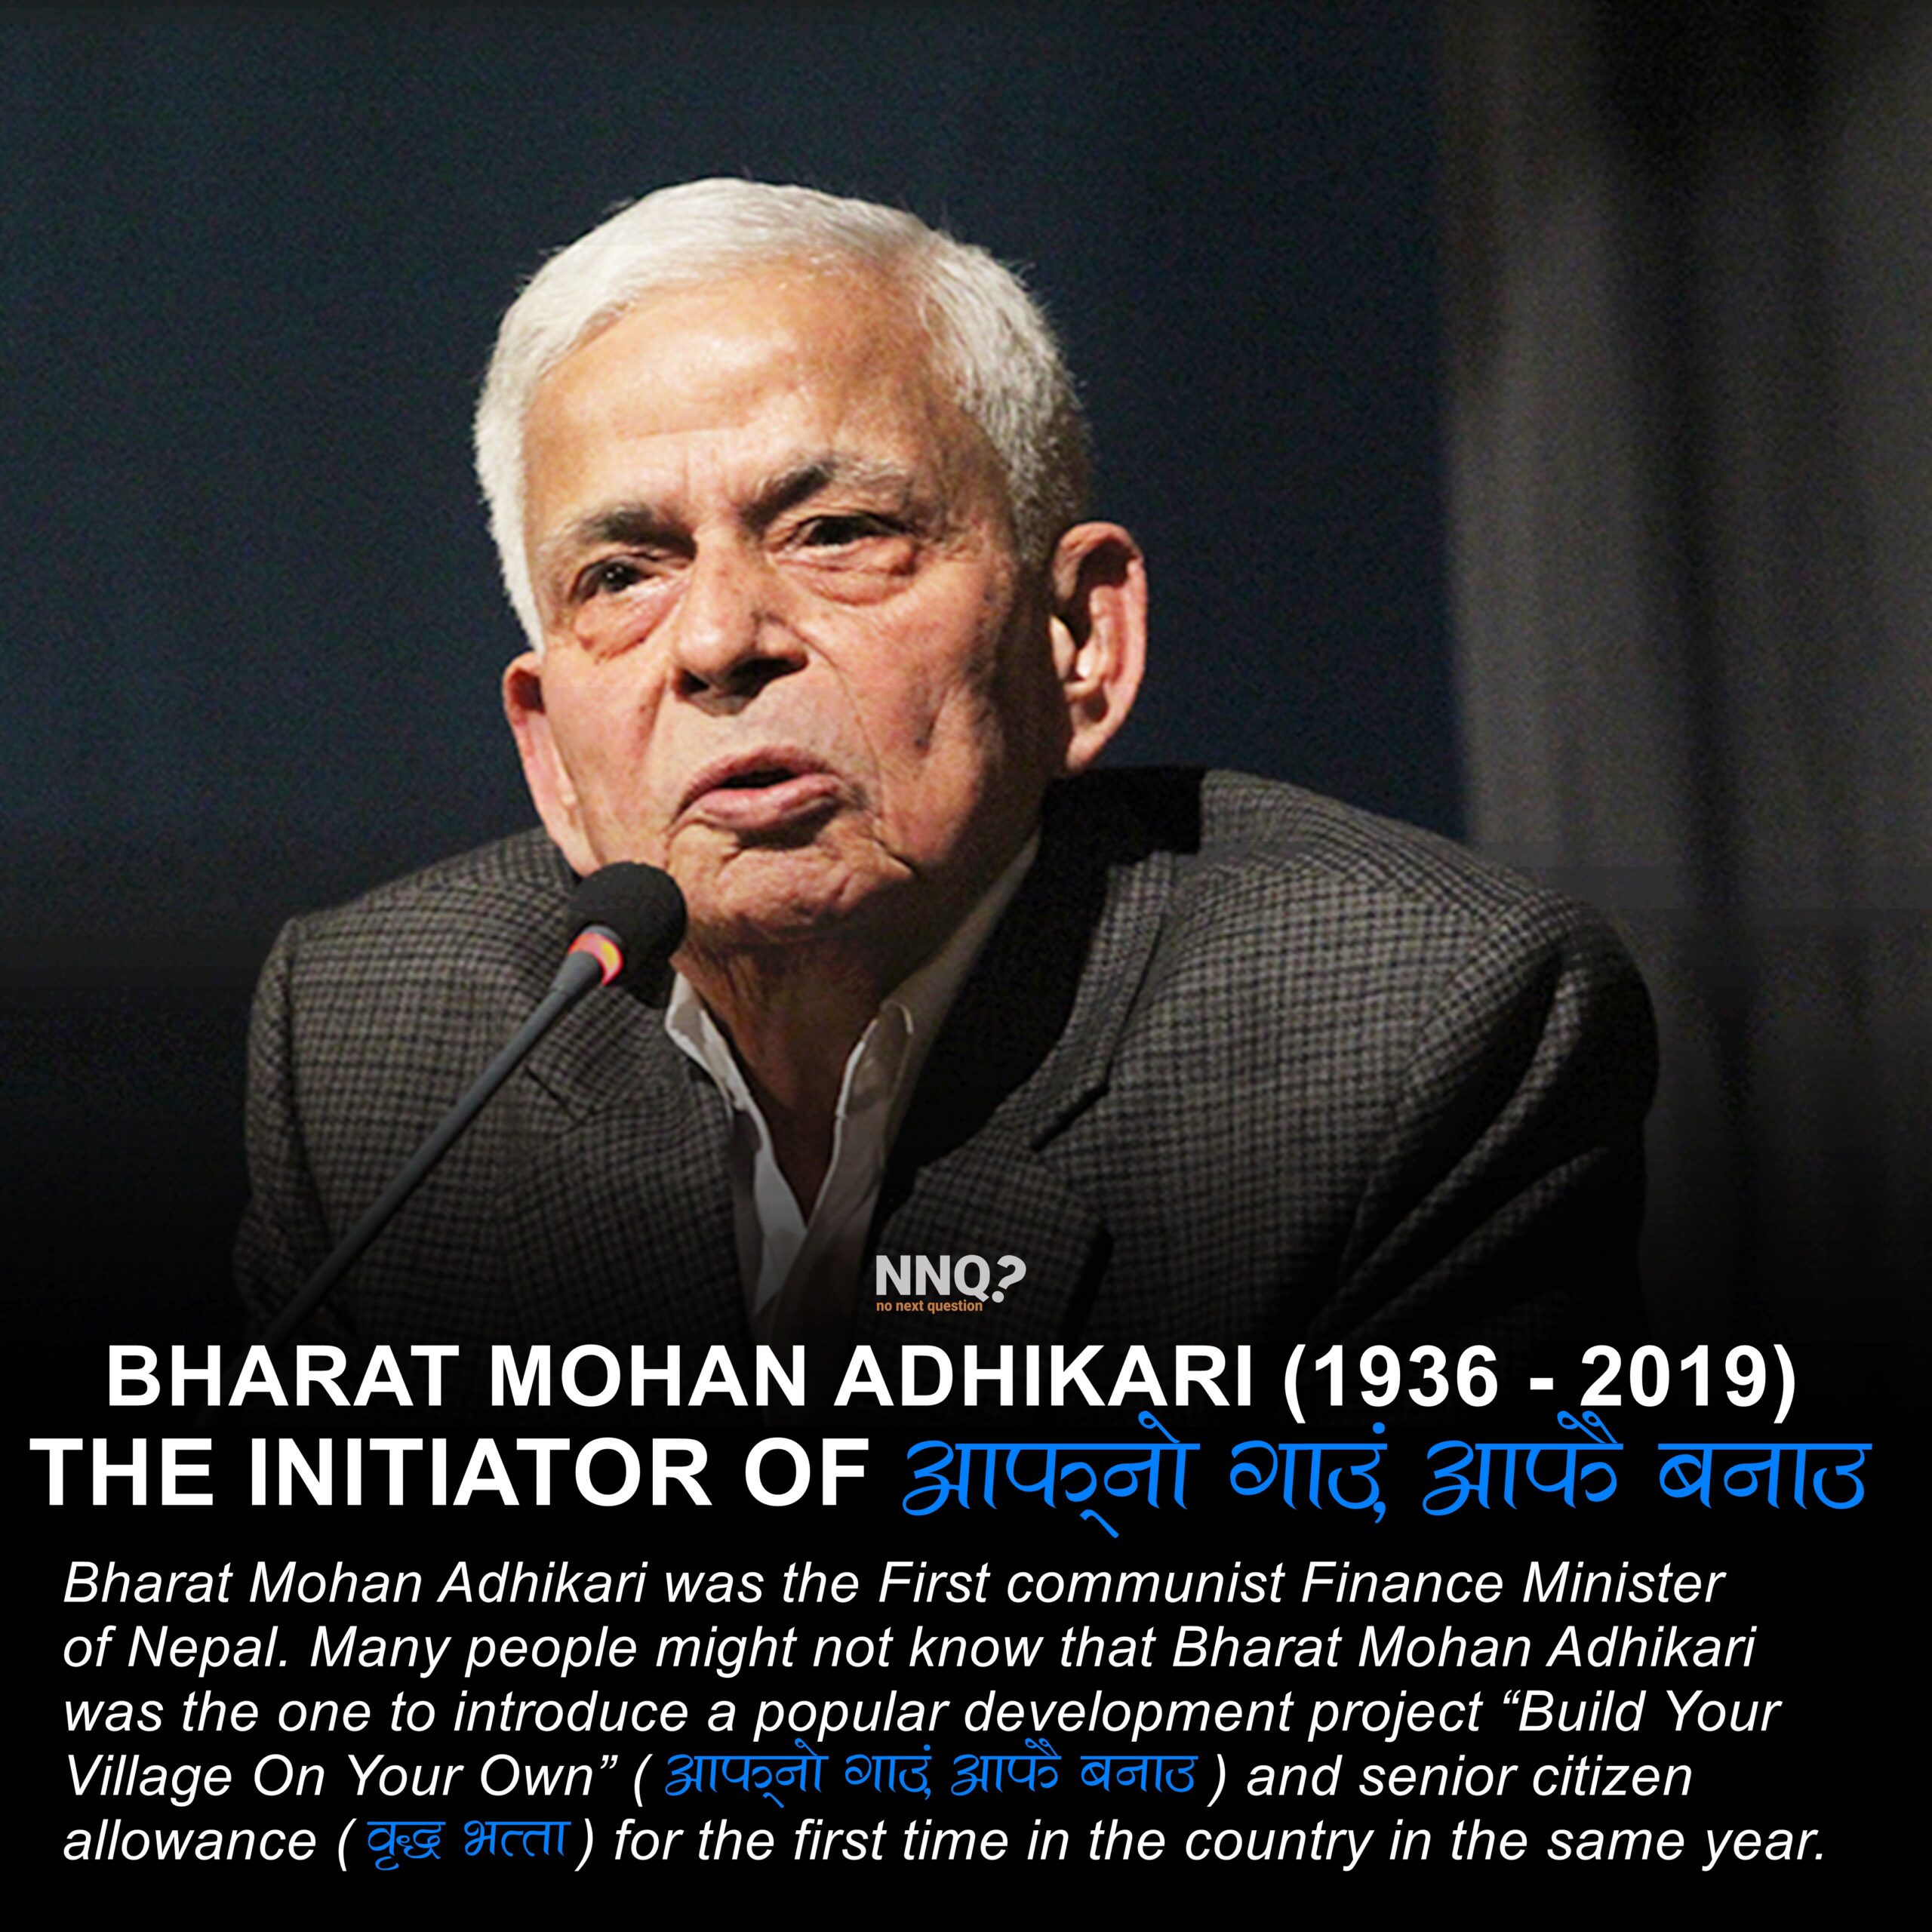 Bharat Mohan Adhikari: The Initiator of “Aafno Gaaun Aafai Banaau”